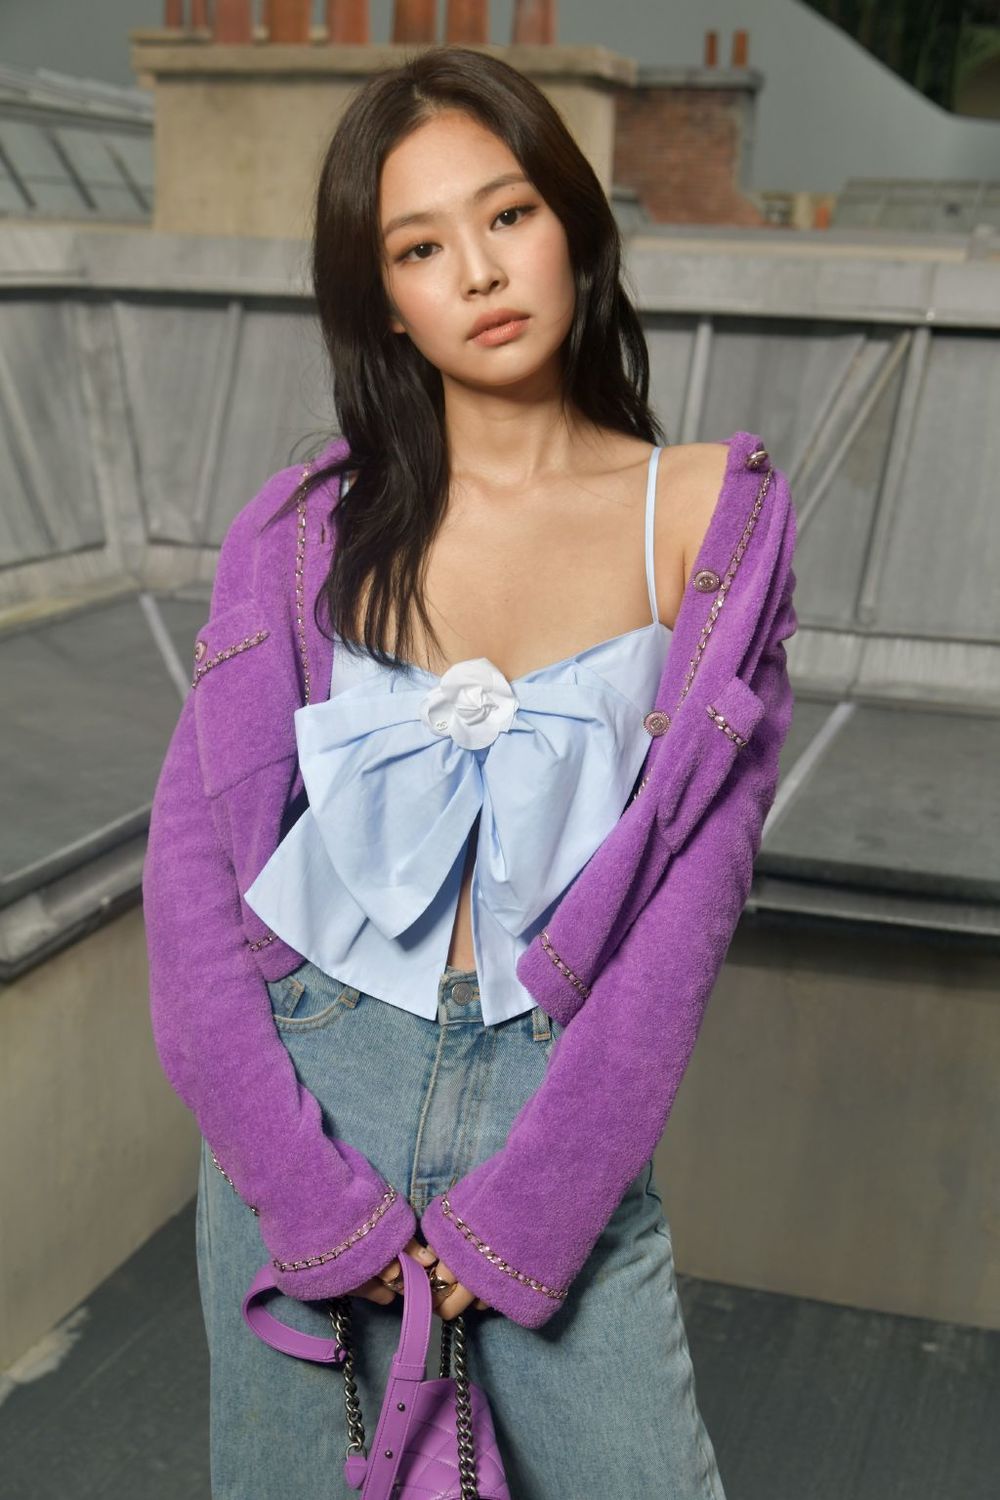  
Chiếc áo nơ gắn liền với hình ảnh của Jennie tại Paris Fashion Week 2019.